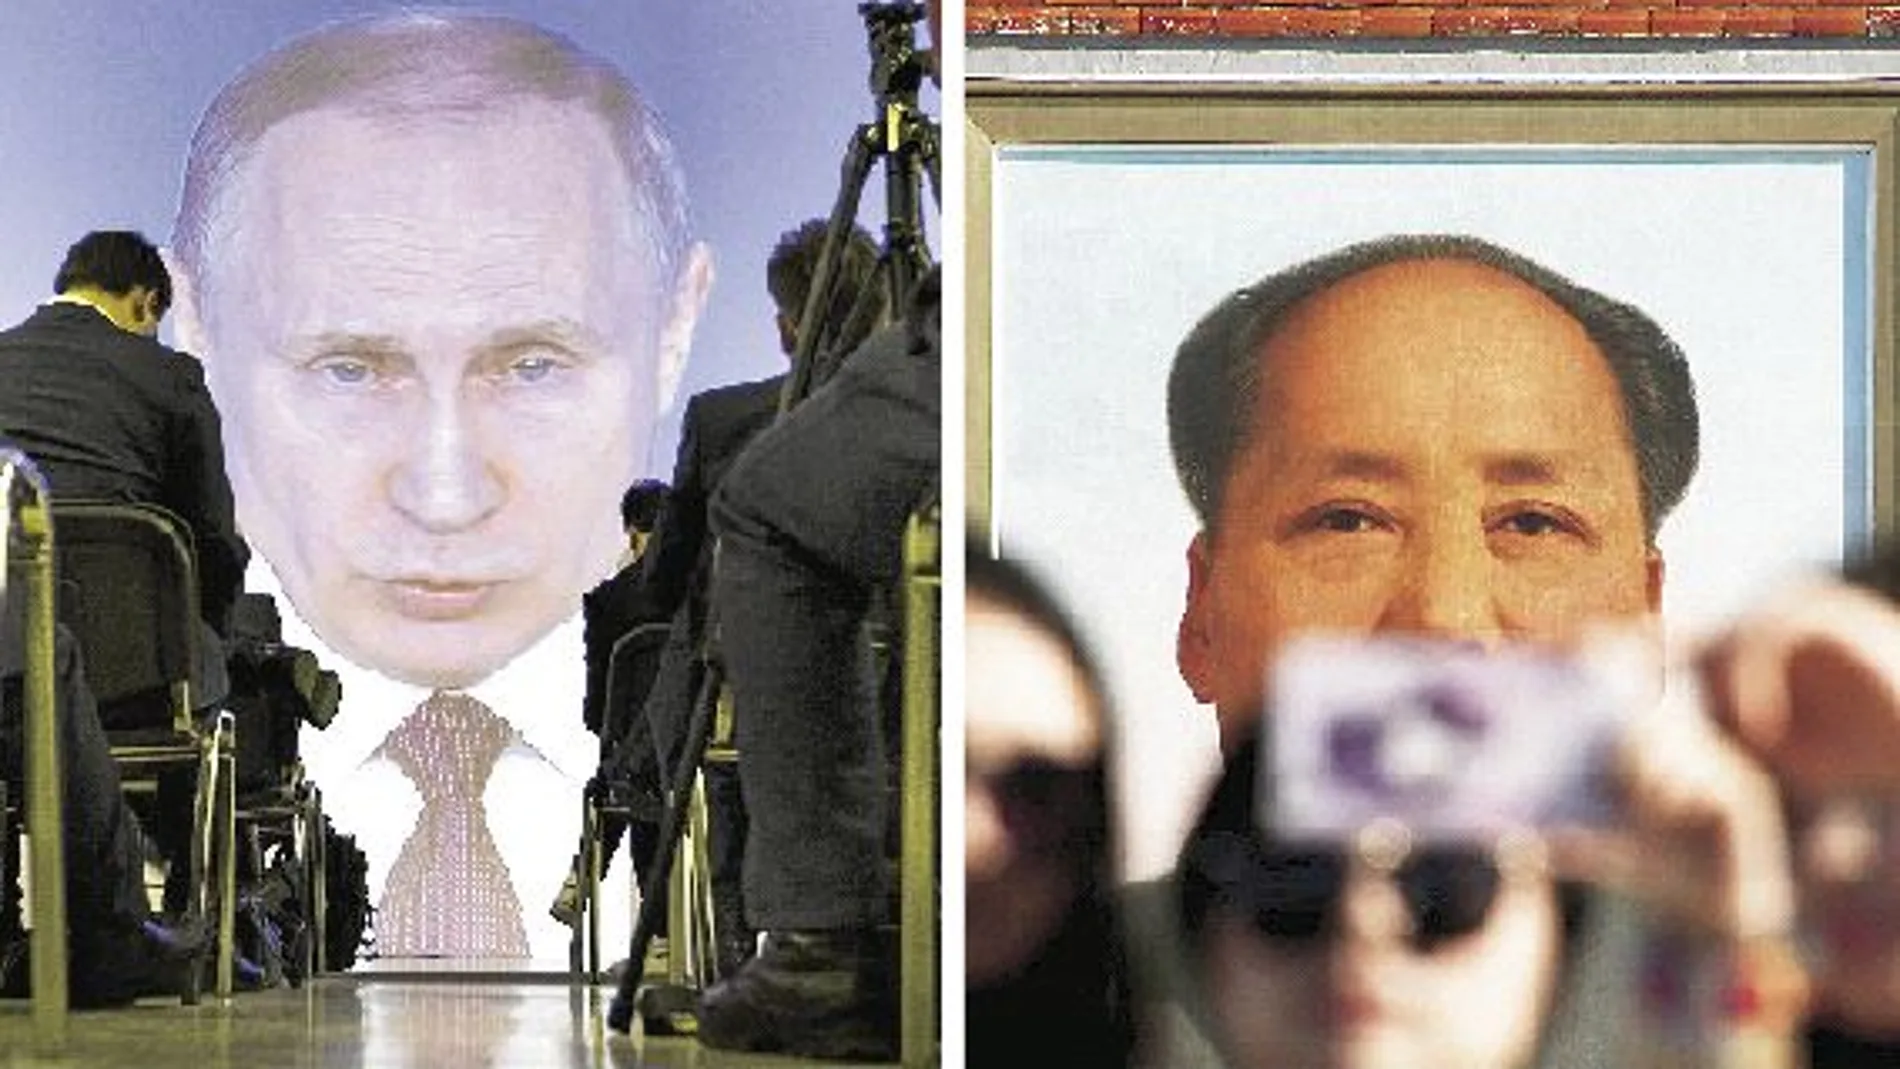 A la izq. Vladimir Putin, el nuevo zar de Rusia. A la der. Mao, quien se convirtió en el rostro de una nación en China